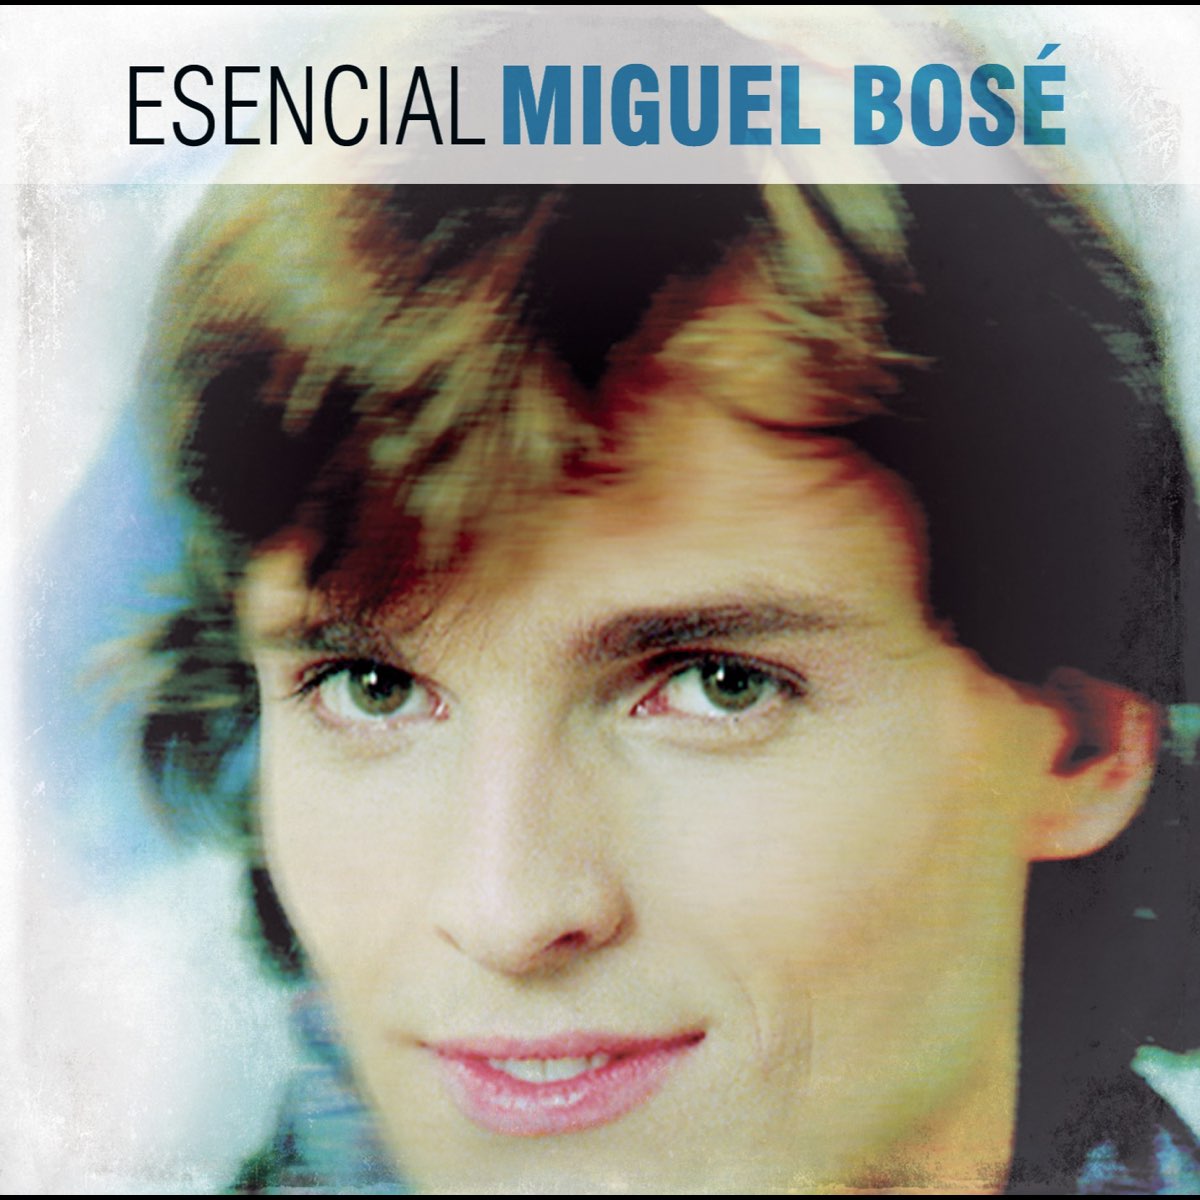 Fantástico Pascua de Resurrección pantalla Esencial Miguel Bose de Miguel Bosé en Apple Music